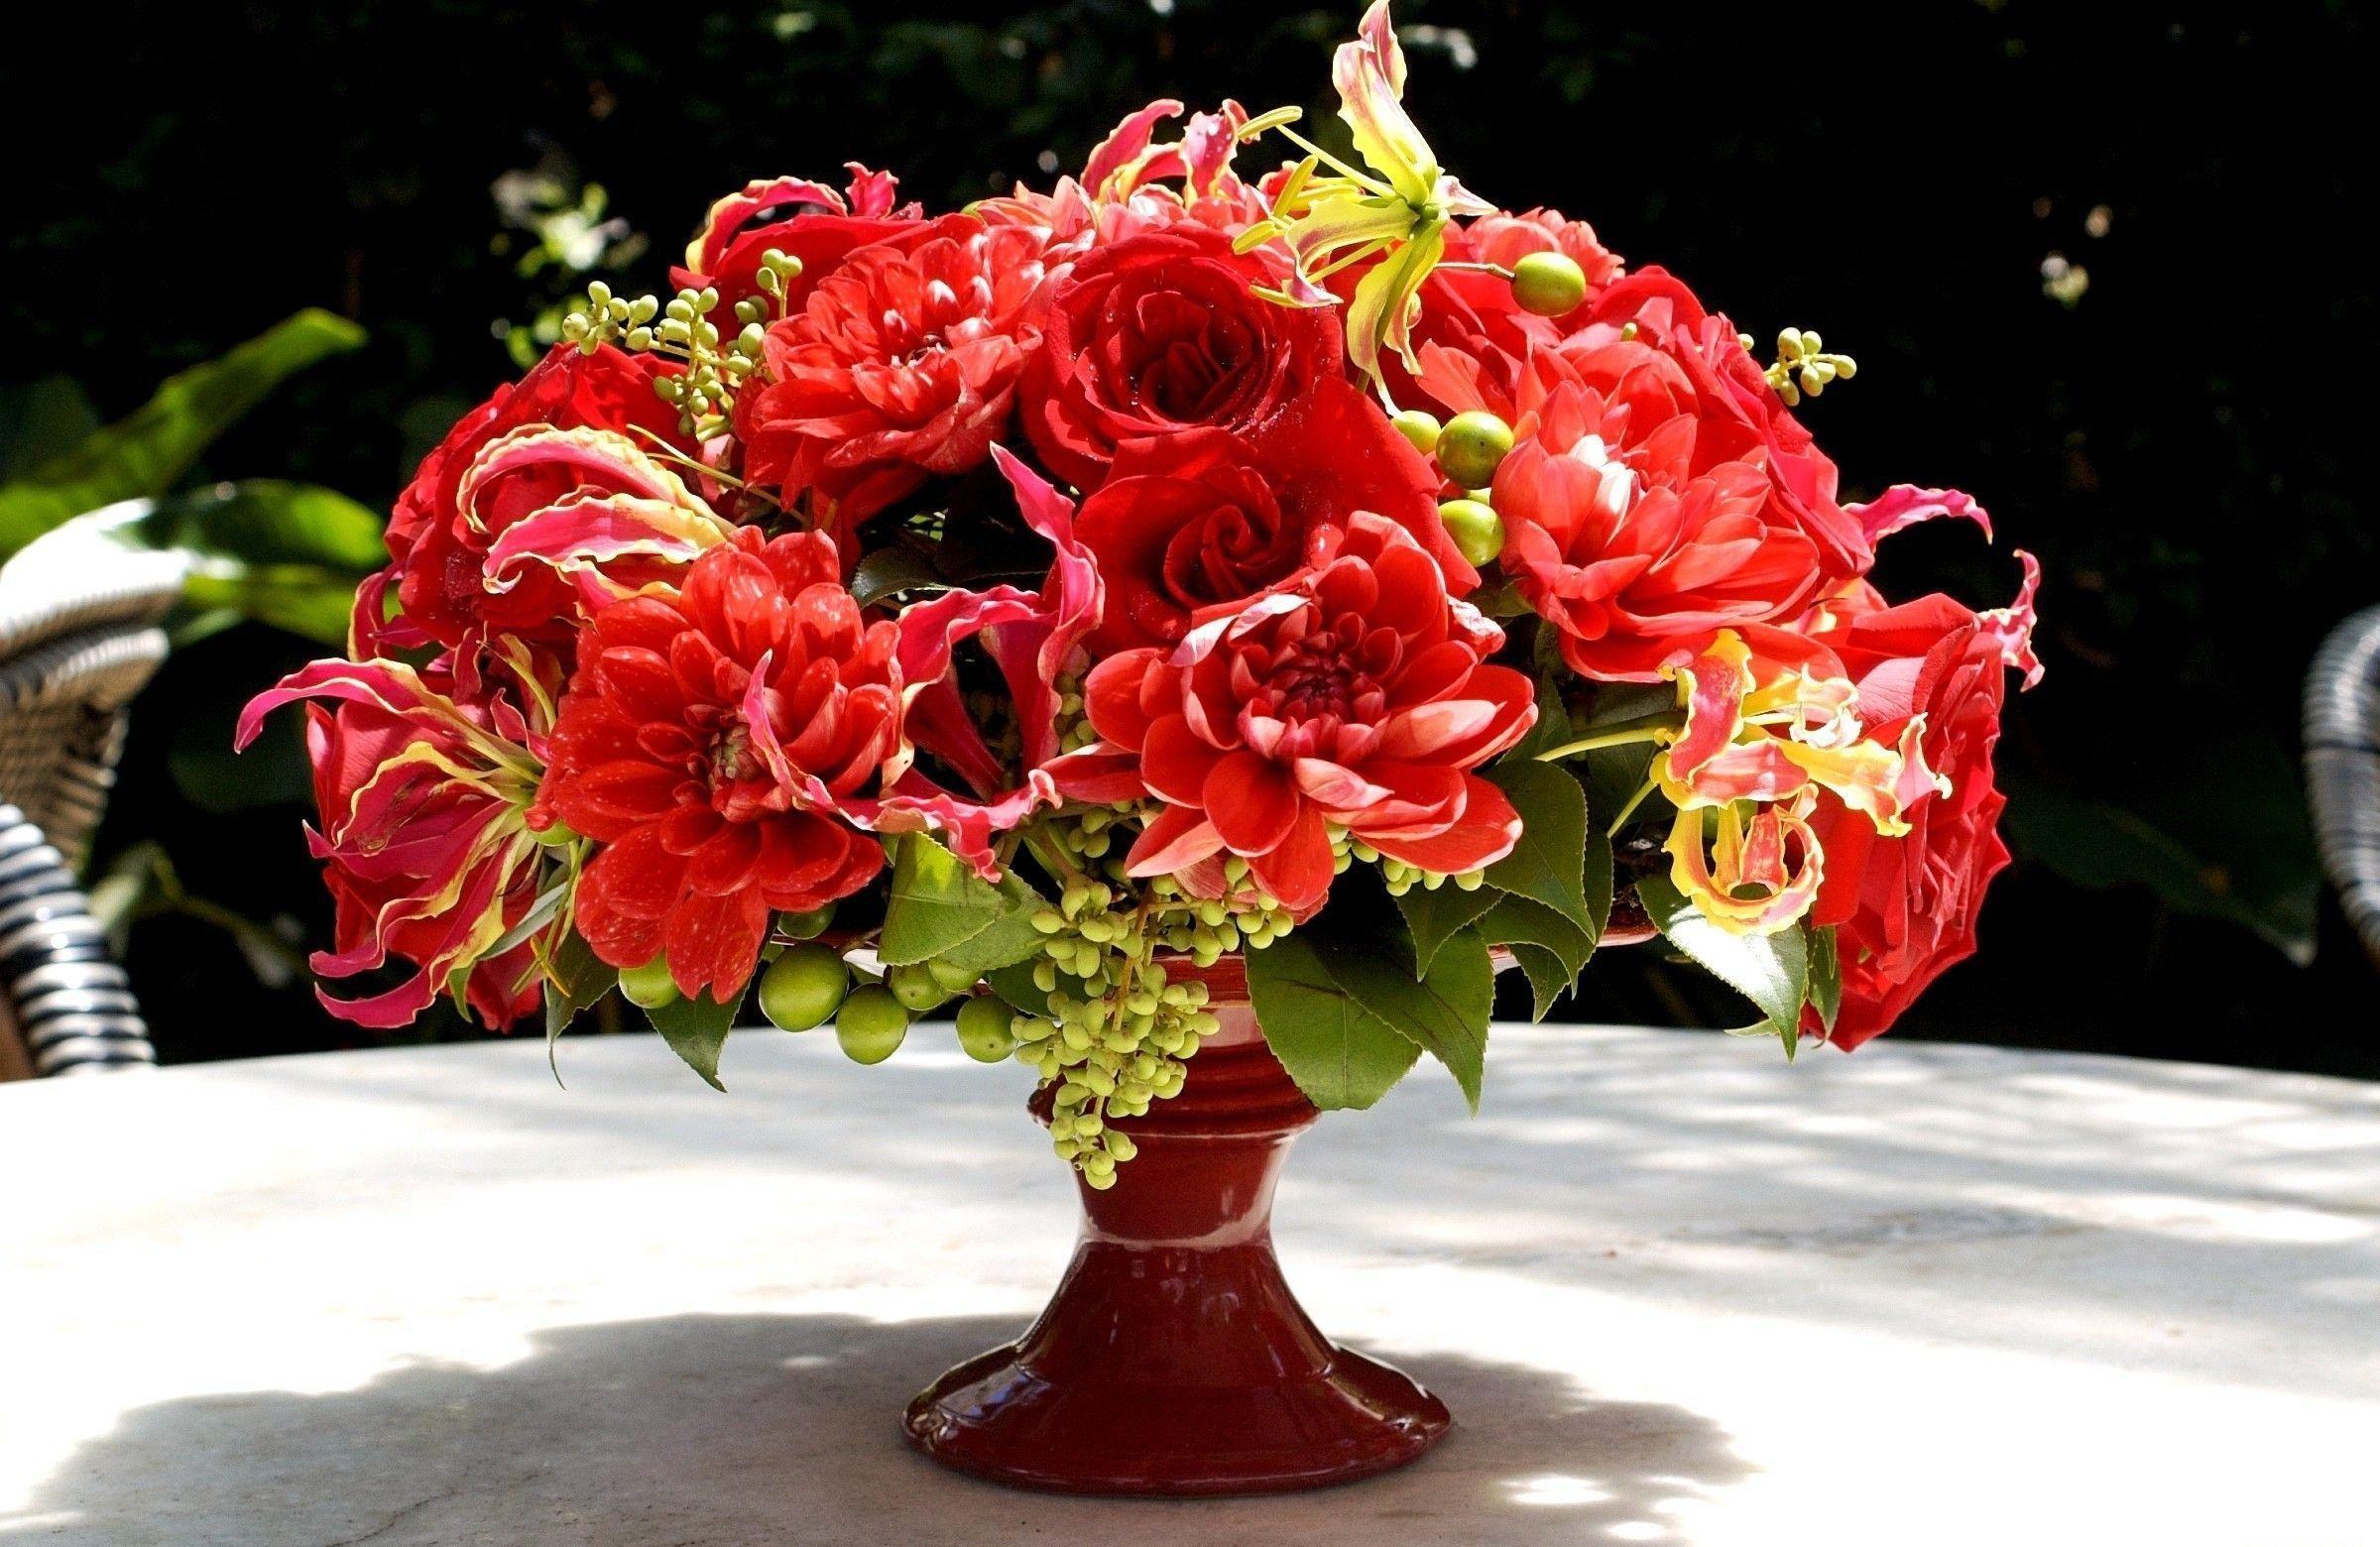 Red Rose Flower Bouquets HD Wallpaper. Widescreen Wallpaper